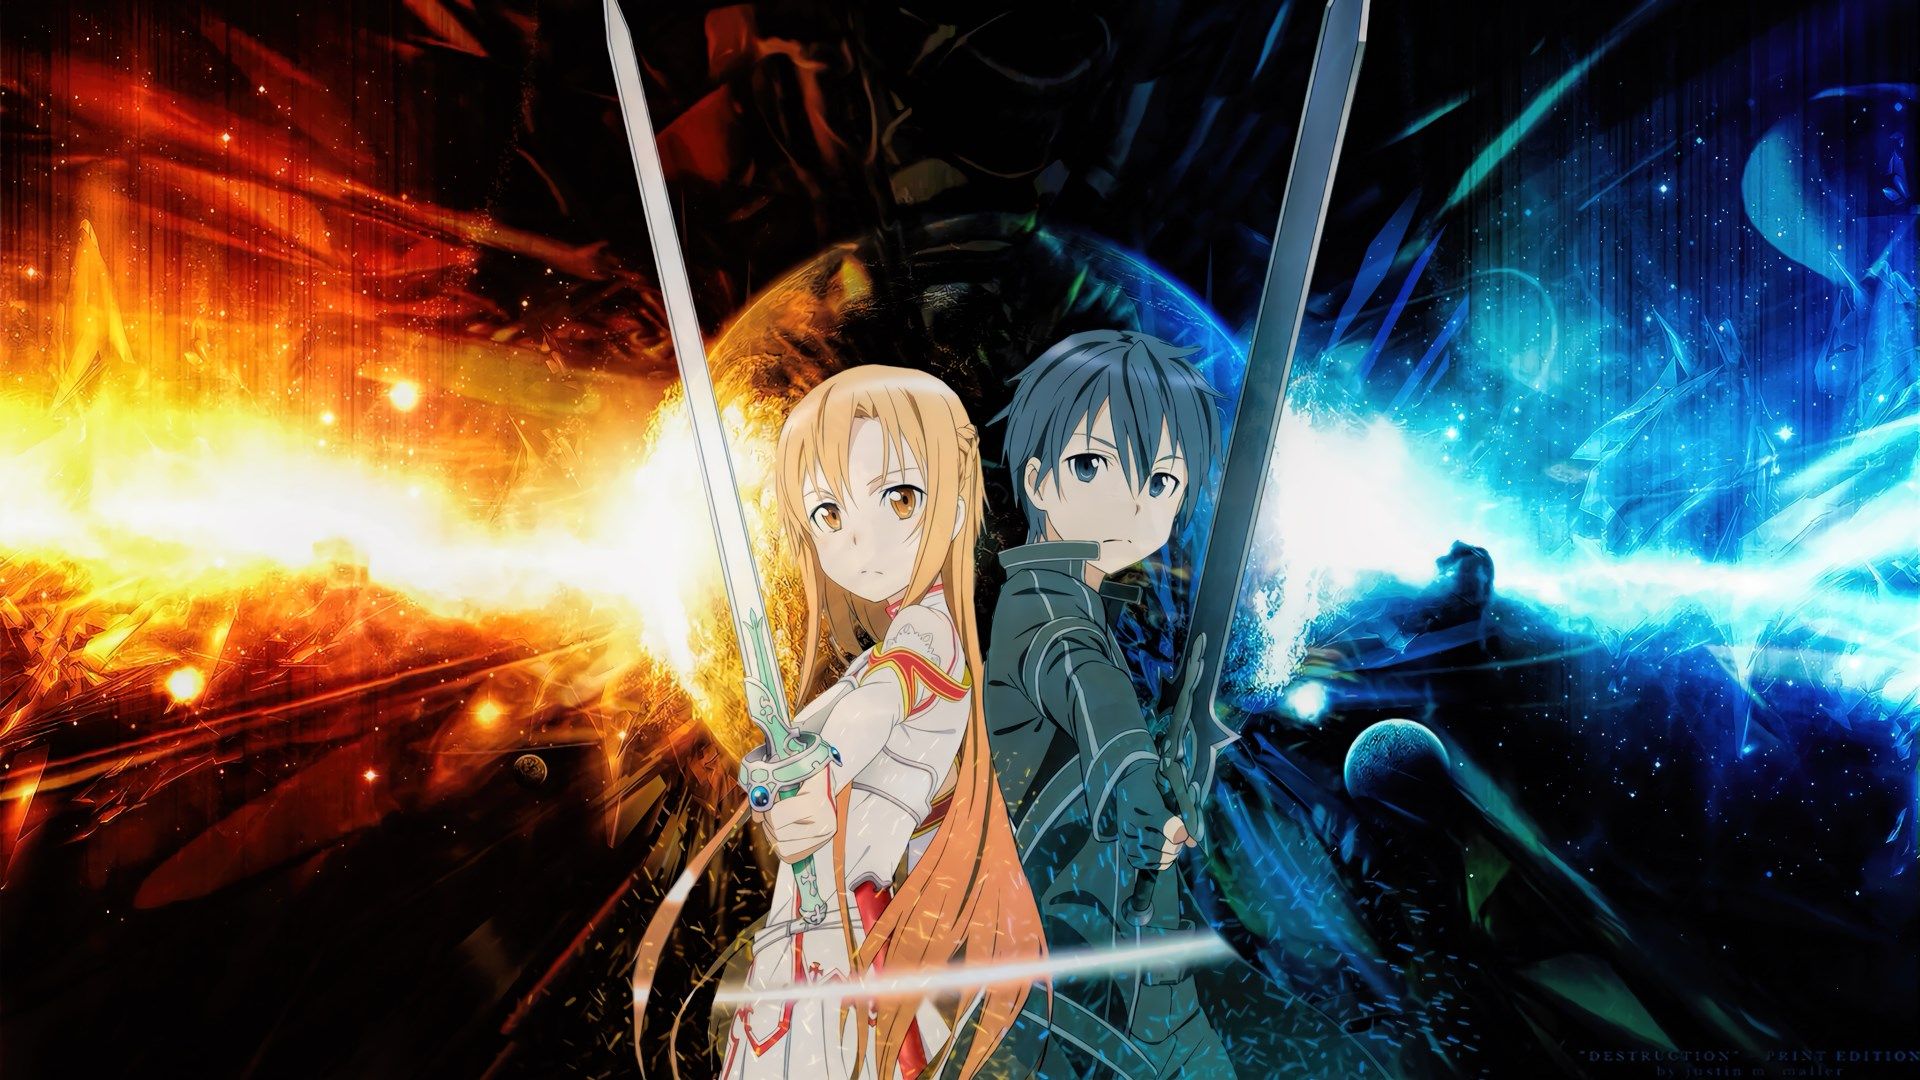 Animax Images Sword Art Online Wallpaper Hd - Sword Art Online Wallpaper Full Hd , HD Wallpaper & Backgrounds